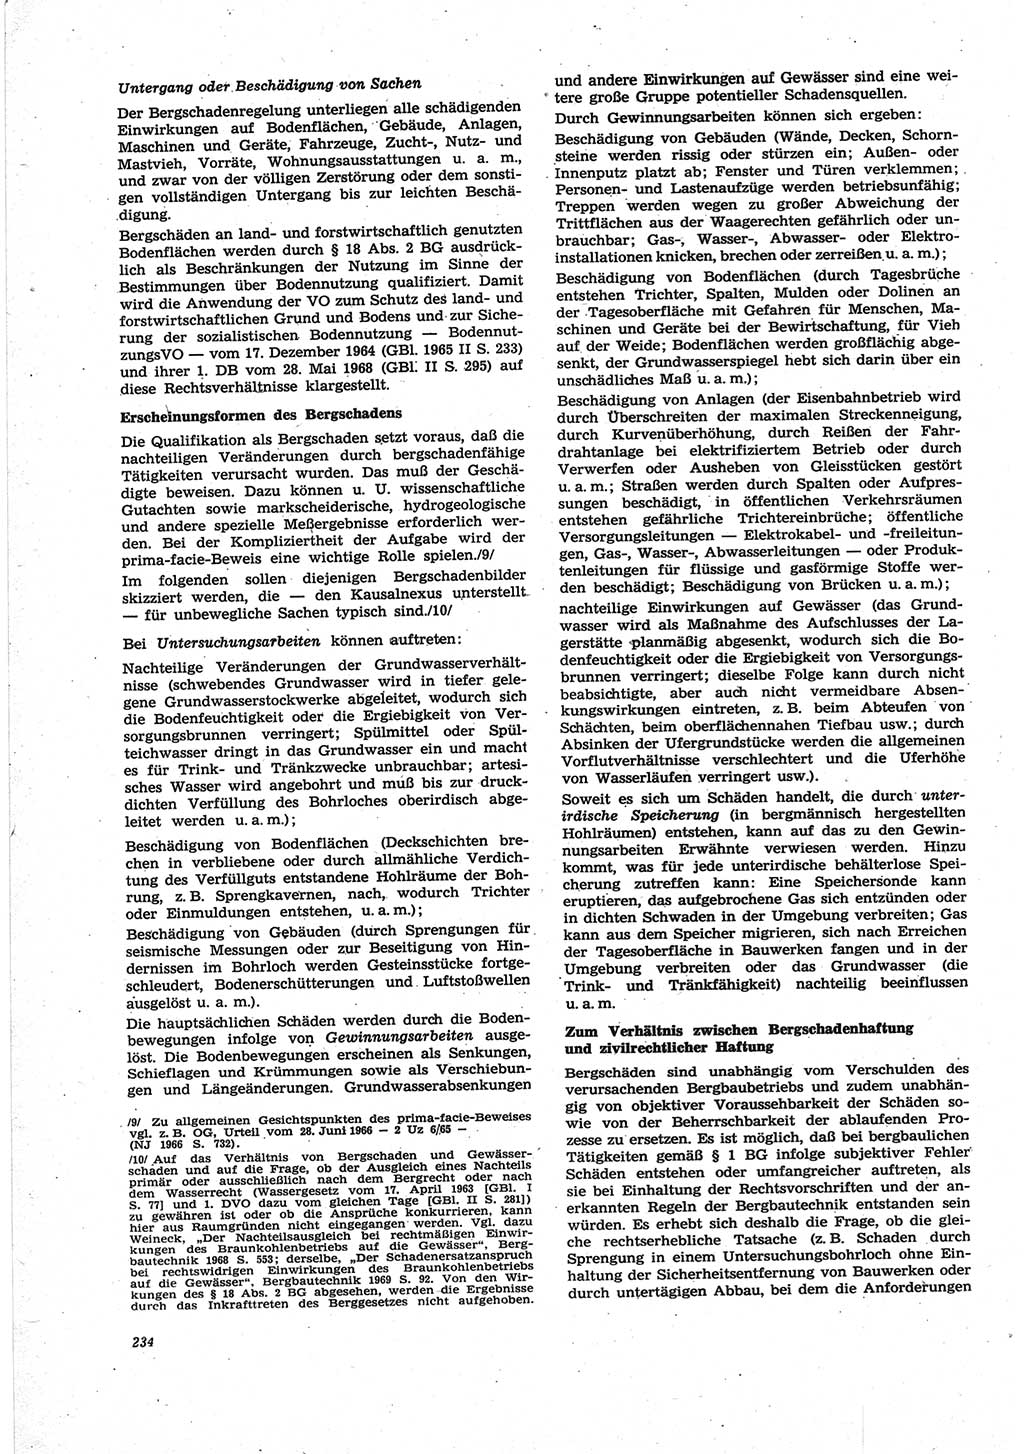 Neue Justiz (NJ), Zeitschrift für Recht und Rechtswissenschaft [Deutsche Demokratische Republik (DDR)], 25. Jahrgang 1971, Seite 234 (NJ DDR 1971, S. 234)